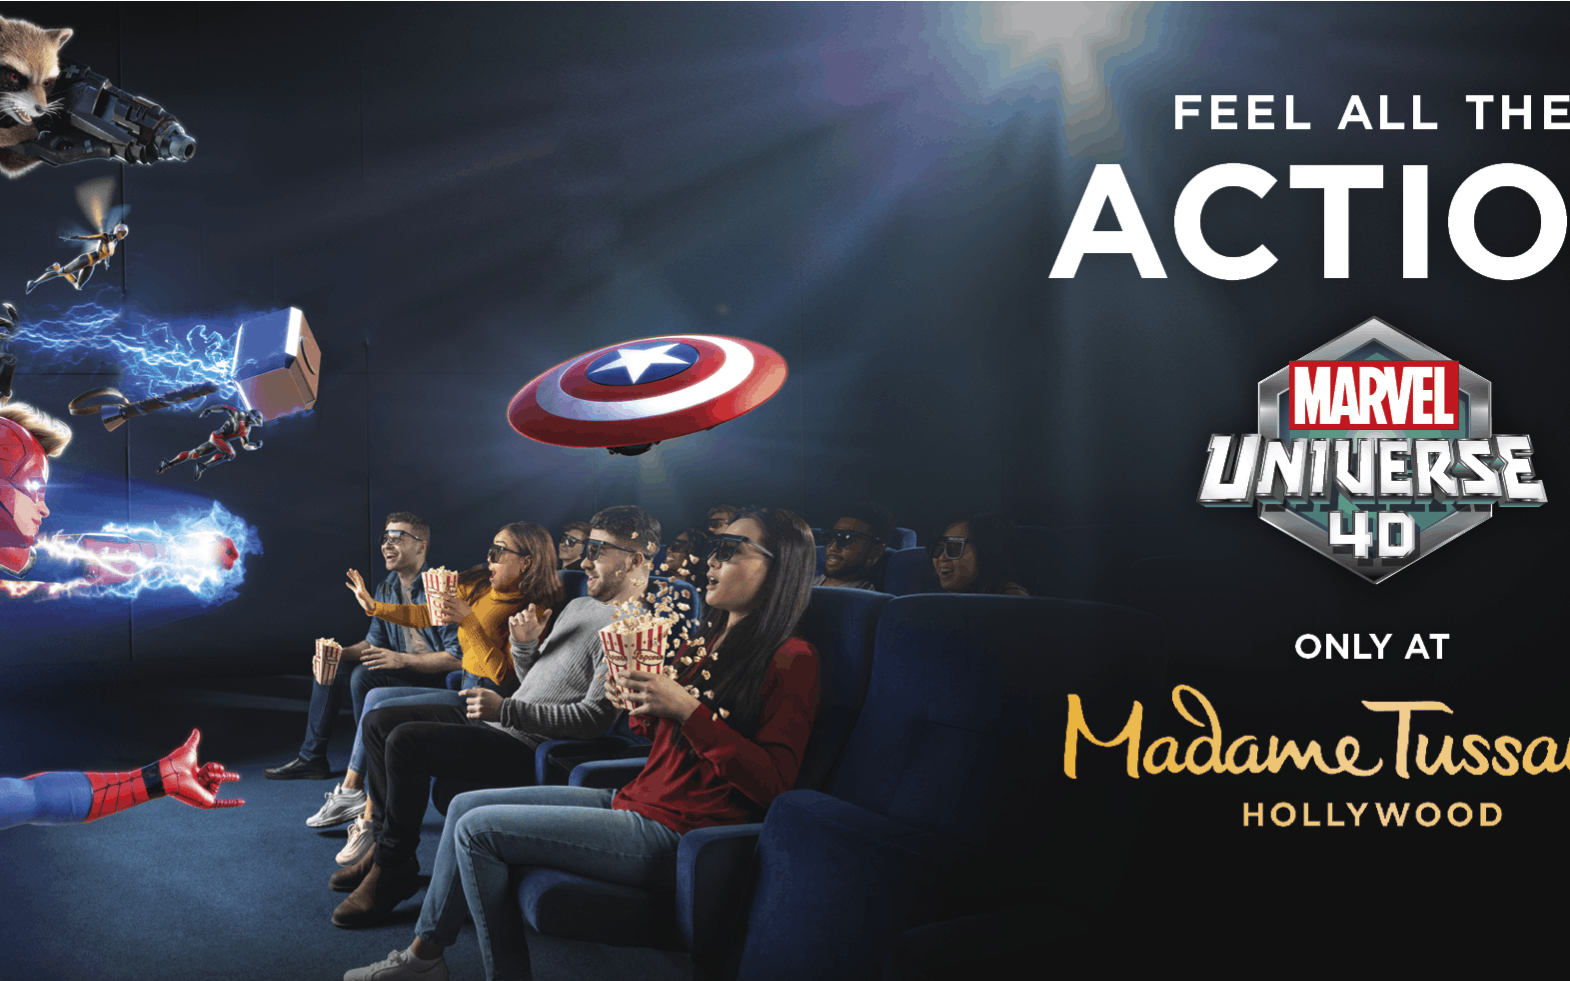 Bilety wstępu do Madame Tussauds Hollywood z Marvel 4D